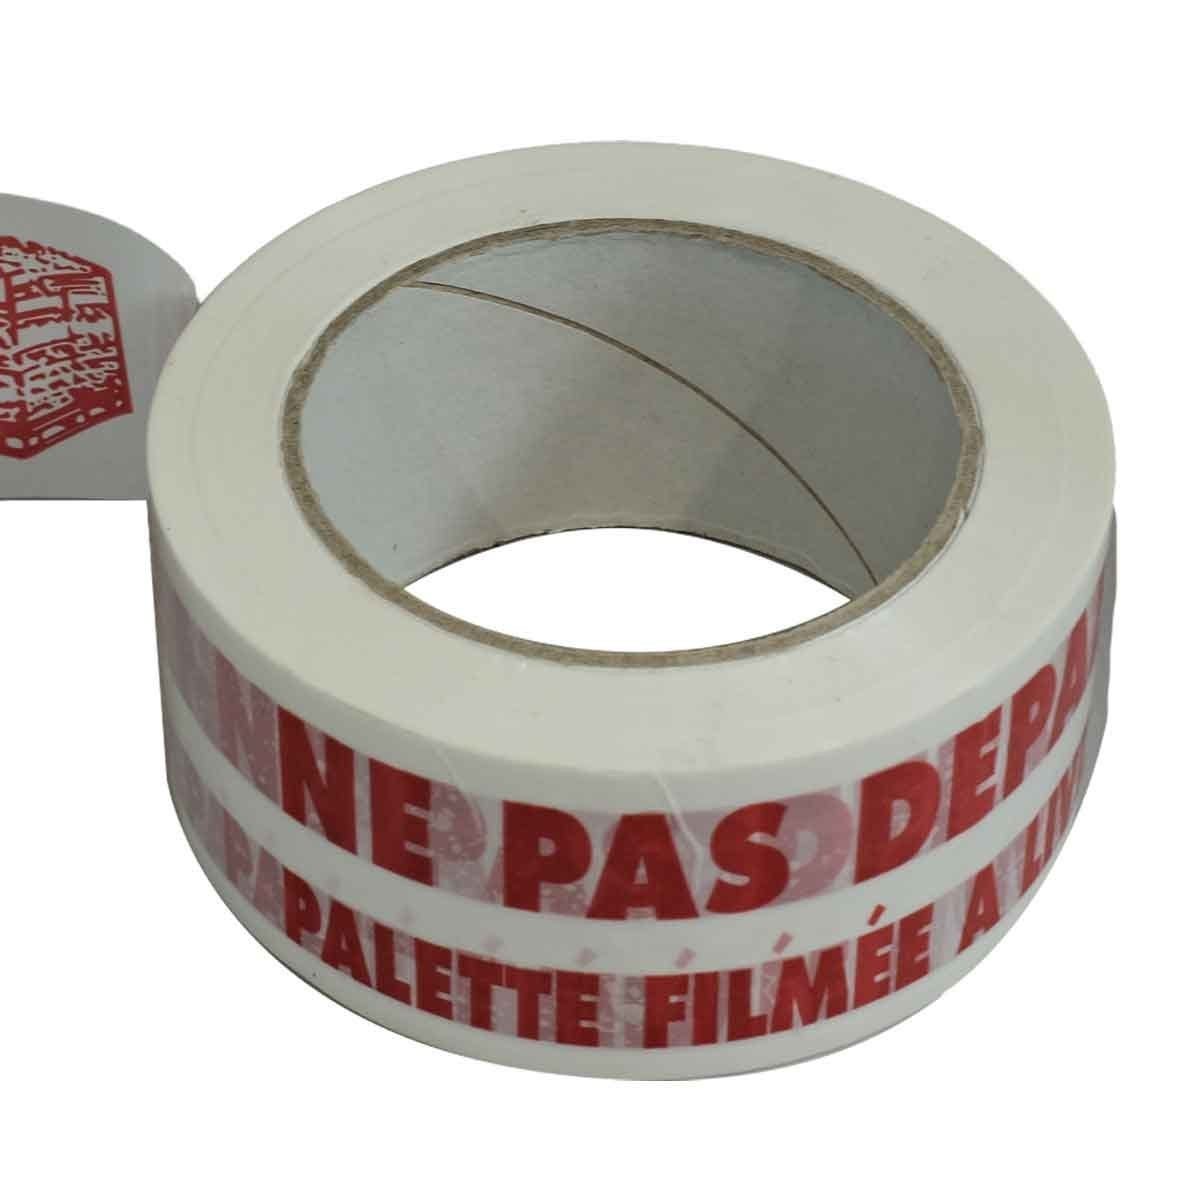 Ruban adhésif d'emballage 28µ blanc imprimé "NE PAS DEPALETTISER" en rouge - rouleau adhésif d'expédition 50 mm x 100 m 2